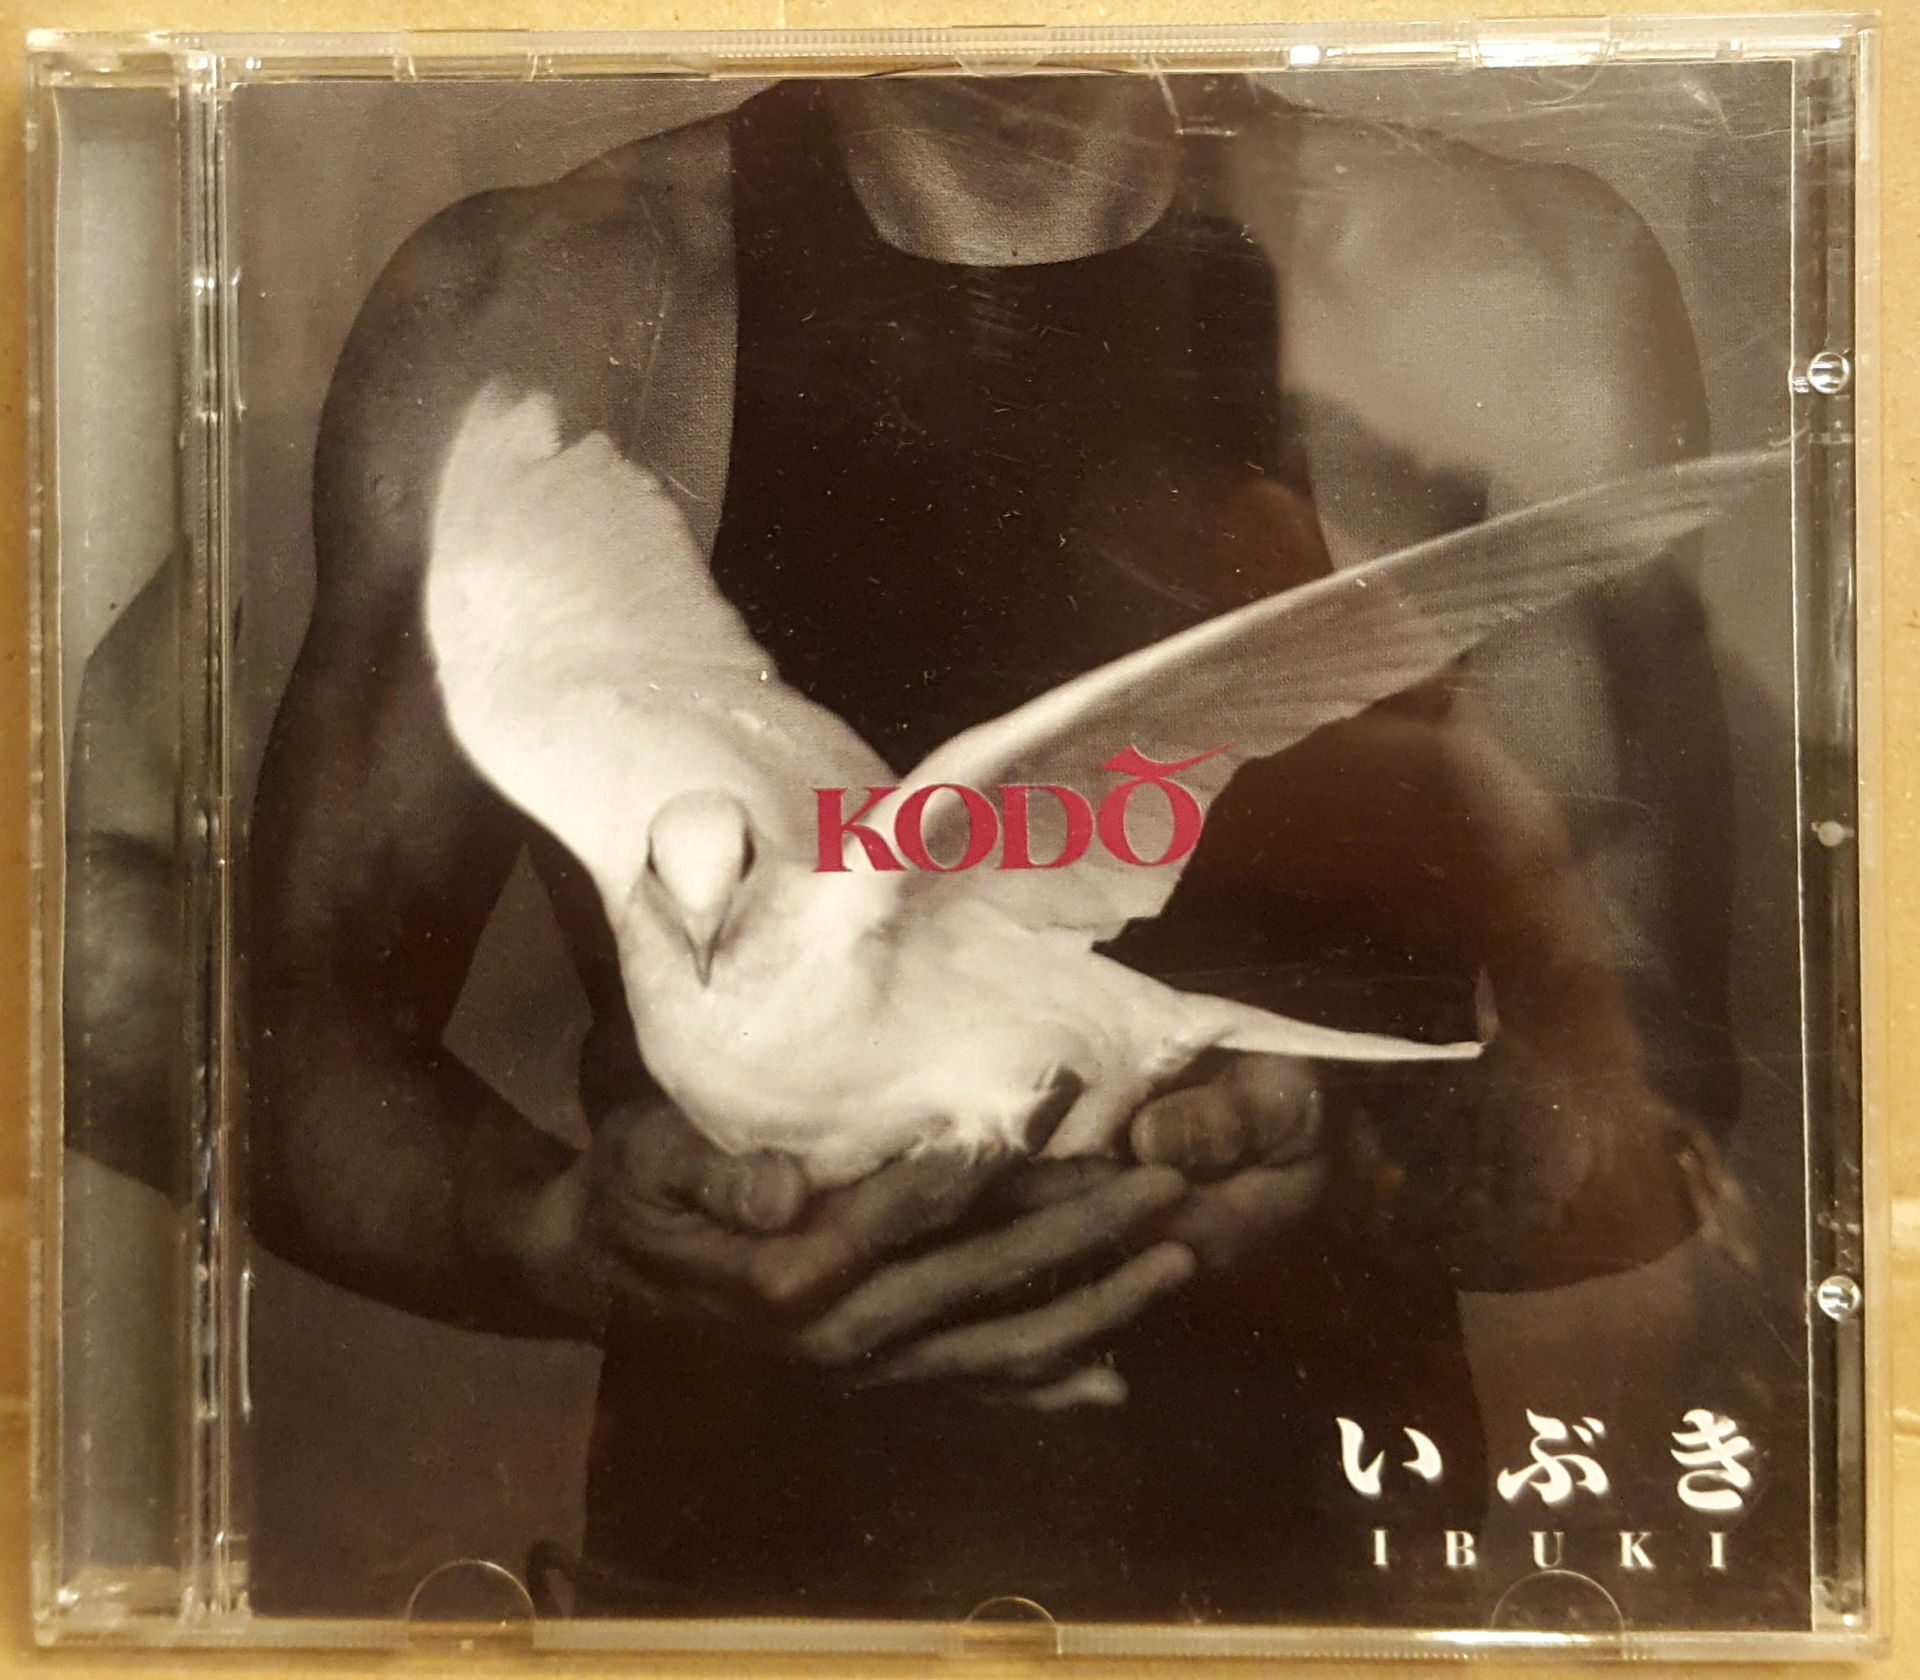 KODO - IBUKI (1998) - CD 2.EL